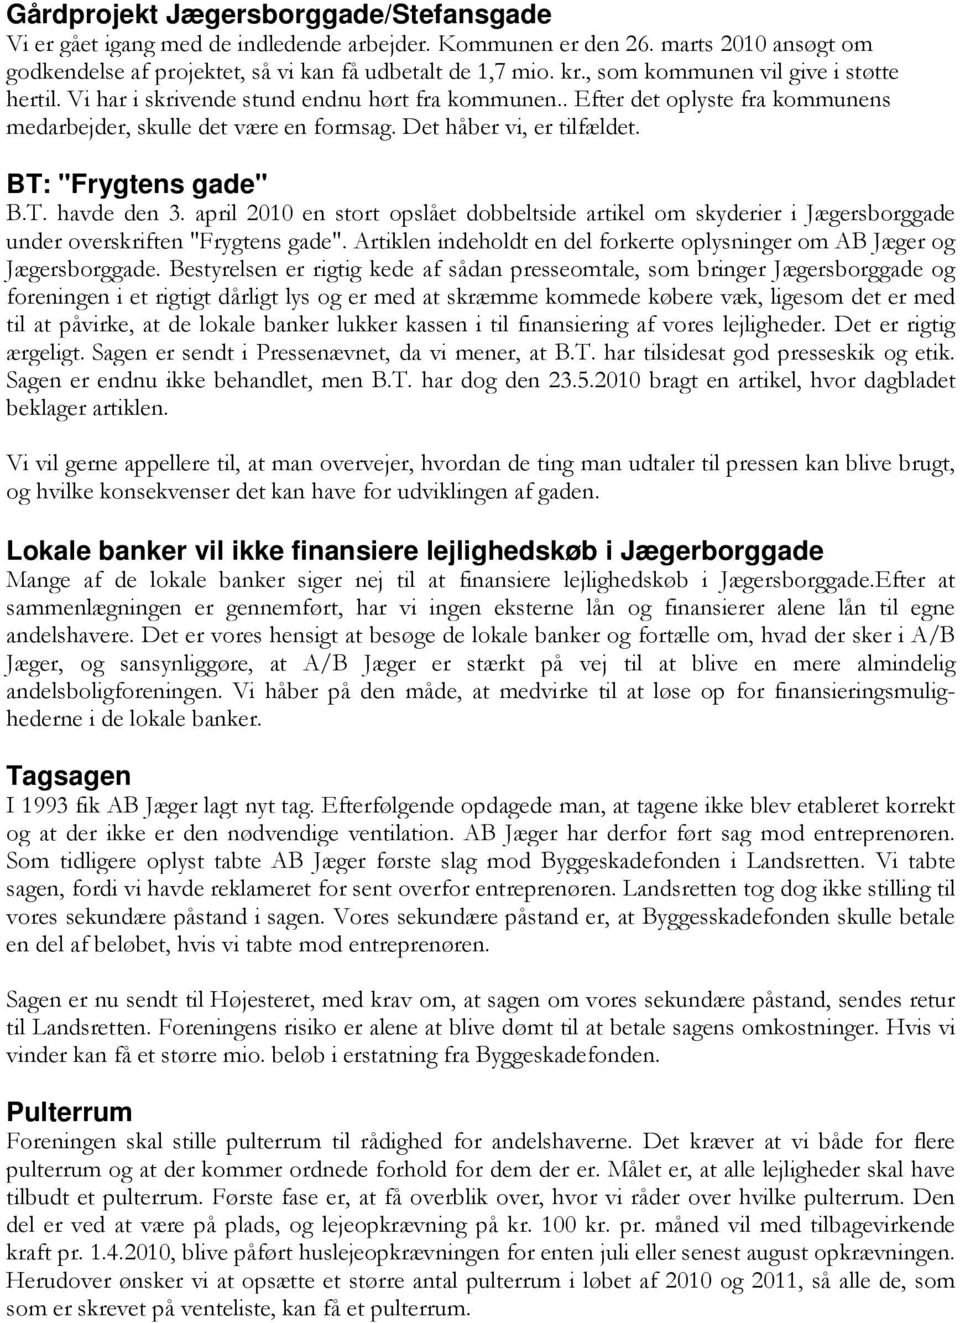 BT: "Frygtens gade" B.T. havde den 3. april 2010 en stort opslået dobbeltside artikel om skyderier i Jægersborggade under overskriften "Frygtens gade".